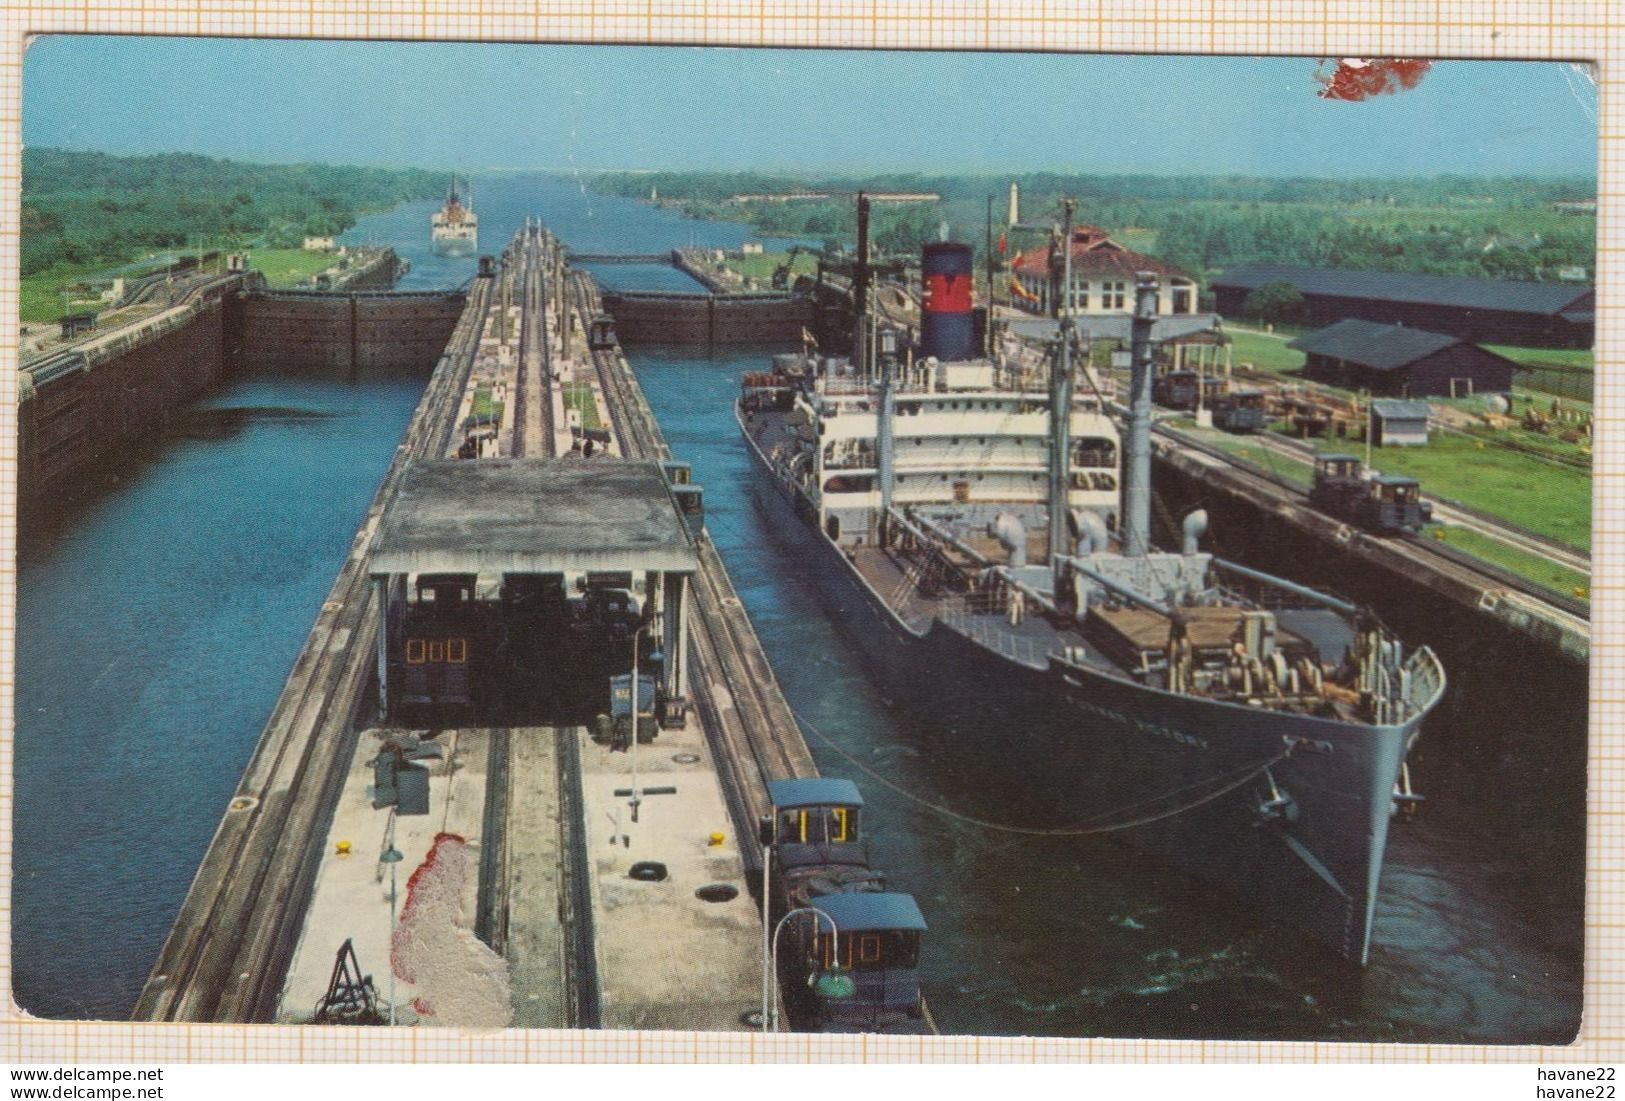 8AK3531 CANAL DE PANAMA ESCLUSAS CACHET BALBOA CANAL ZONE 1955 Carte Legerement Abimée 2 SCANS - Panama